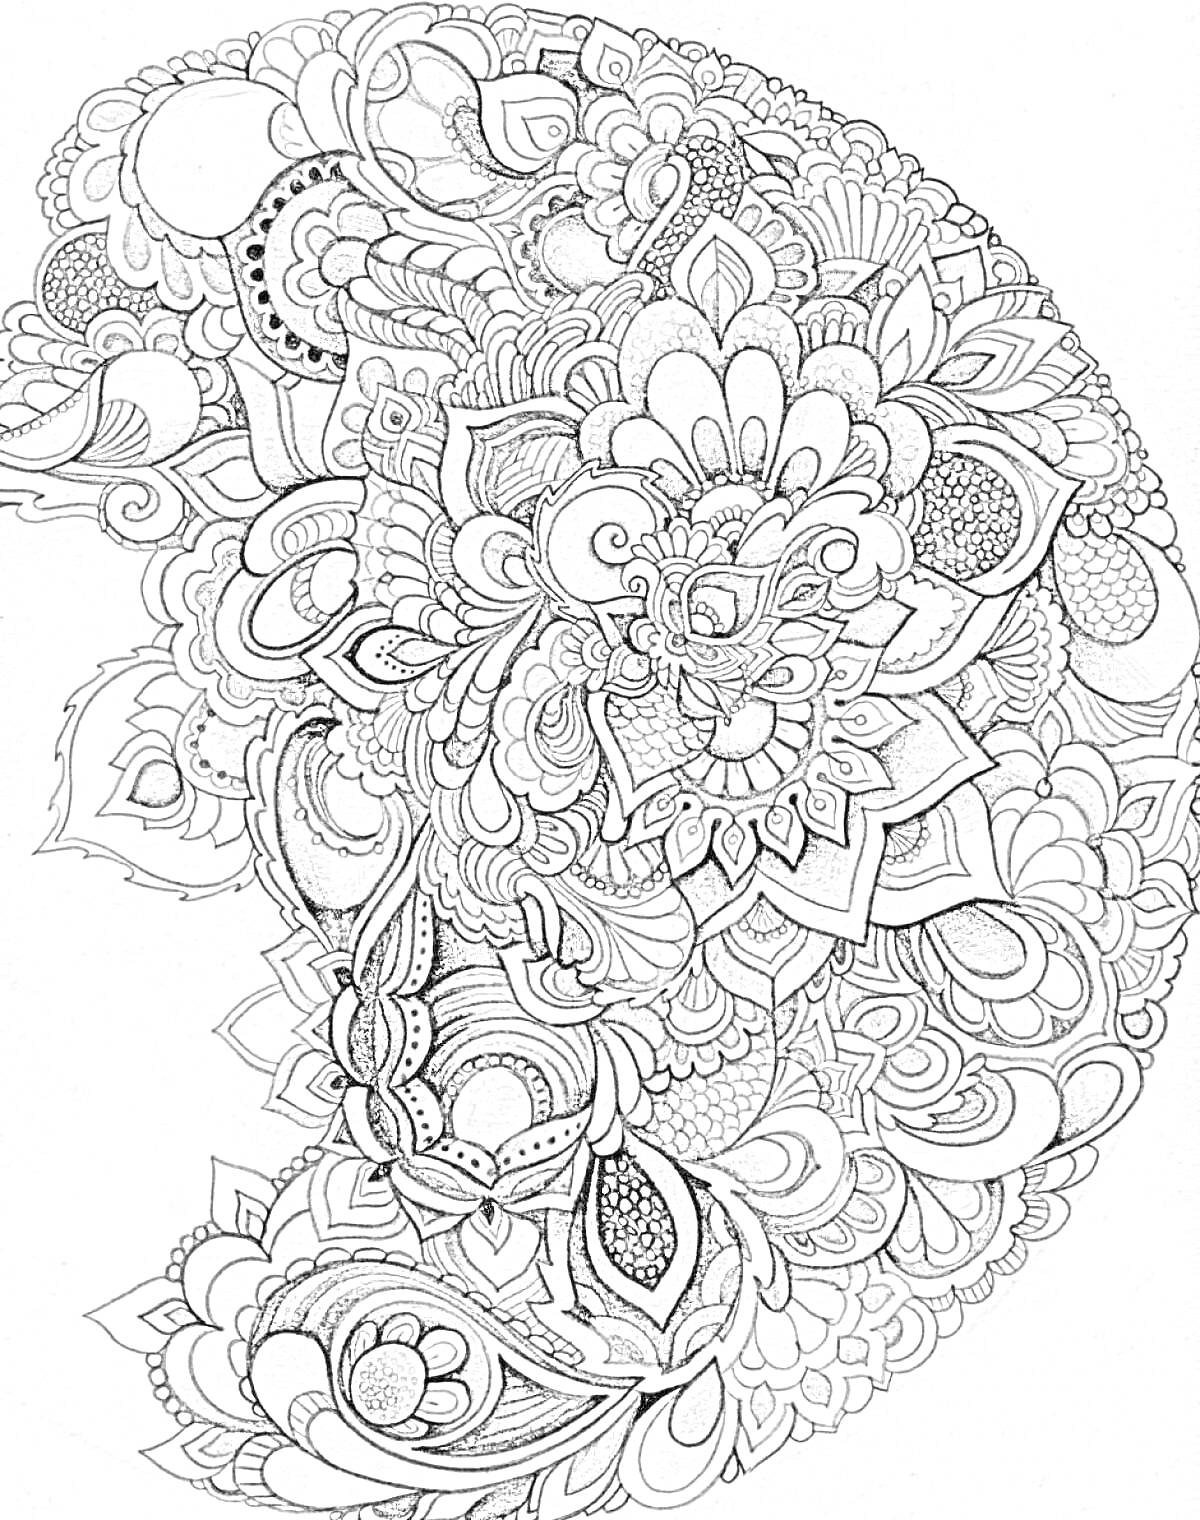 Раскраска Композиция в стиле антистресс с цветами, листьями и абстрактными узорами